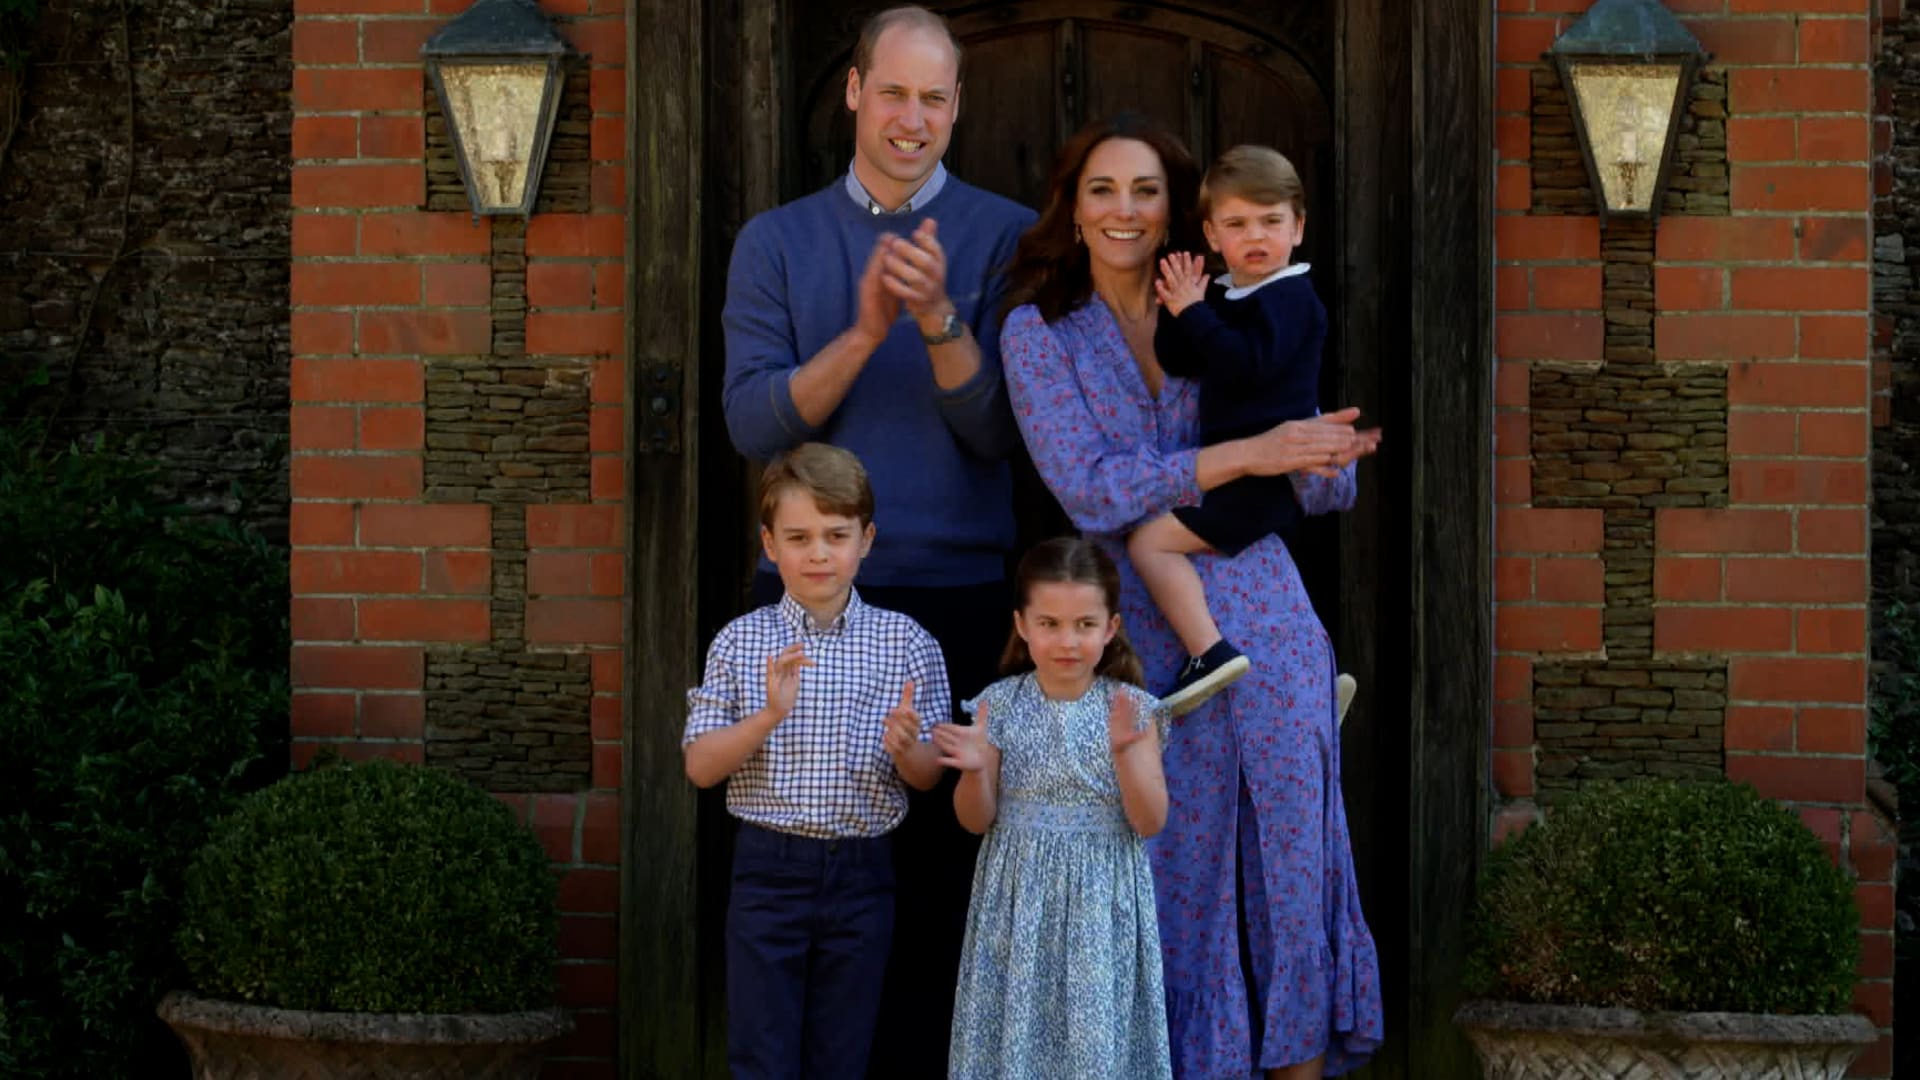 Vévoda s vévodkyní z Cambridge chtějí být nablízku královně. Chtějí také dopřát dětem normální život.